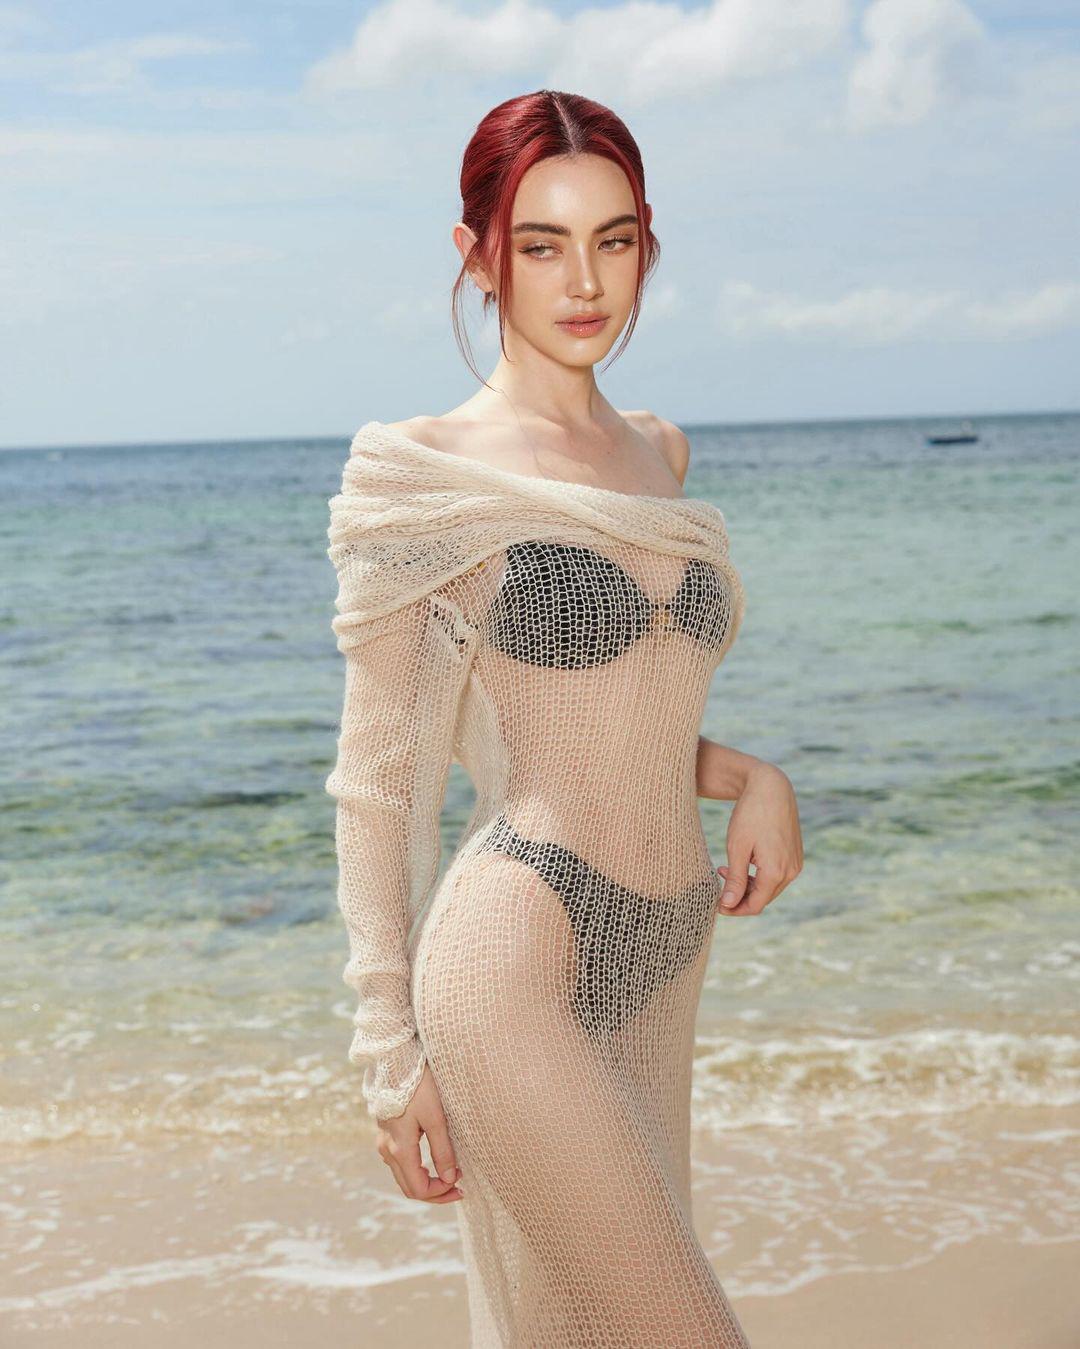 Cô trông vô cùng quyến rũ khi phối váy lưới bên ngoài bikini đi biển.&nbsp;